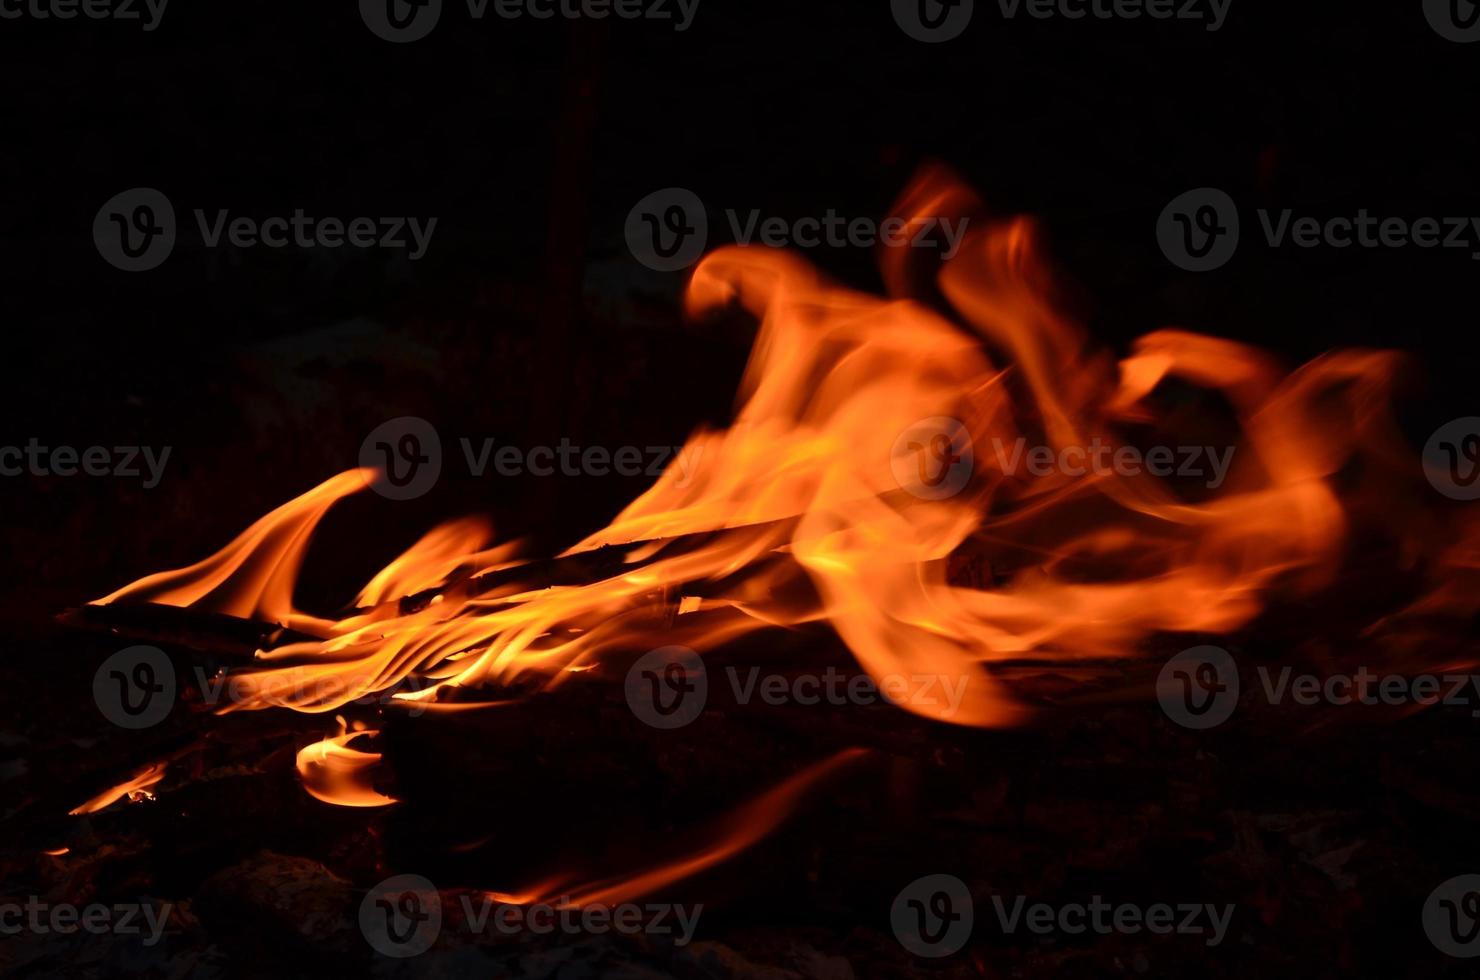 brandend hout logboeken in de nacht. wazig licht. helder rood brand. natuur afbeelding. foto